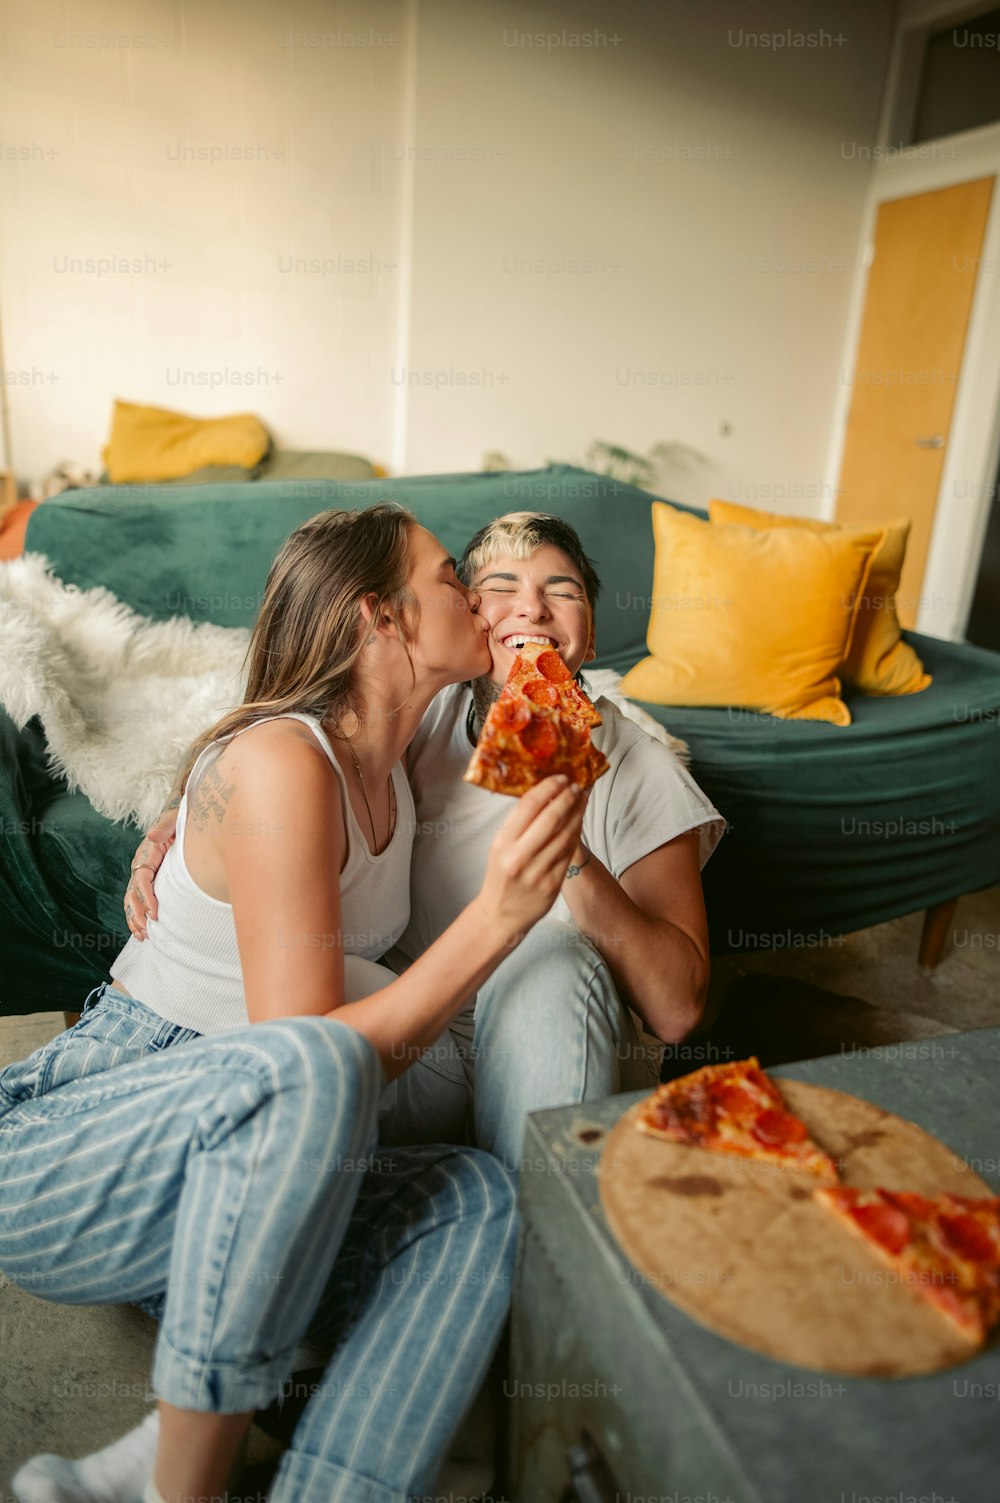 Un homme et une femme assis par terre en train de manger une pizza